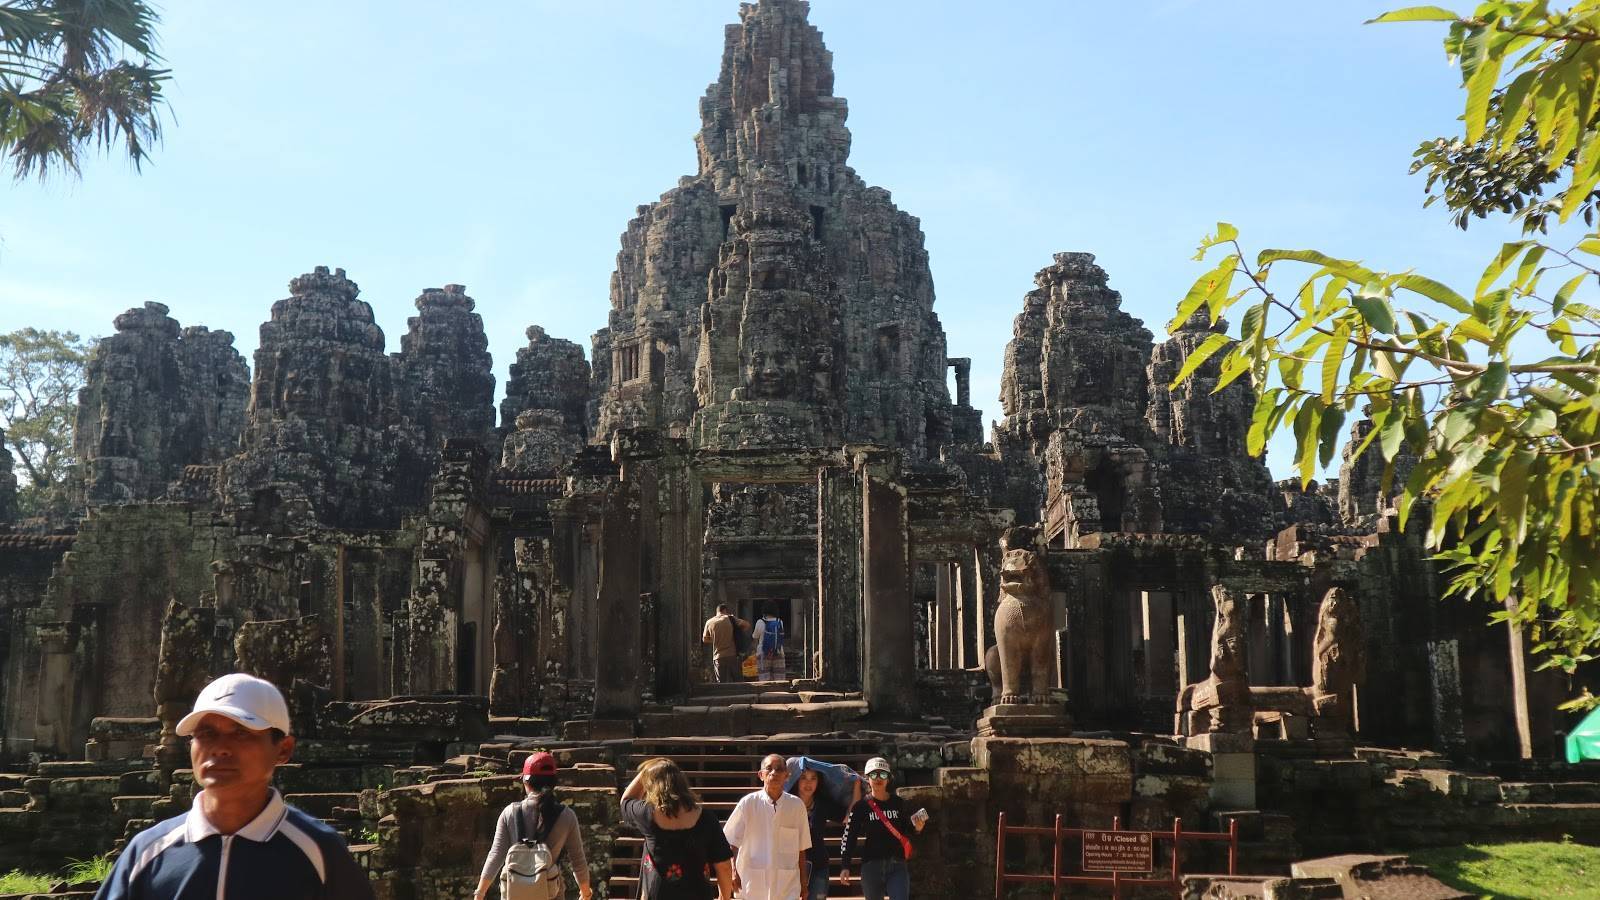 Храм ангкор-ват 2022 в камбодже. фото храмового комплекса, как добраться, экскурсии, история, карта, туры самостоятельно, стоимость билета, отзывы, ви